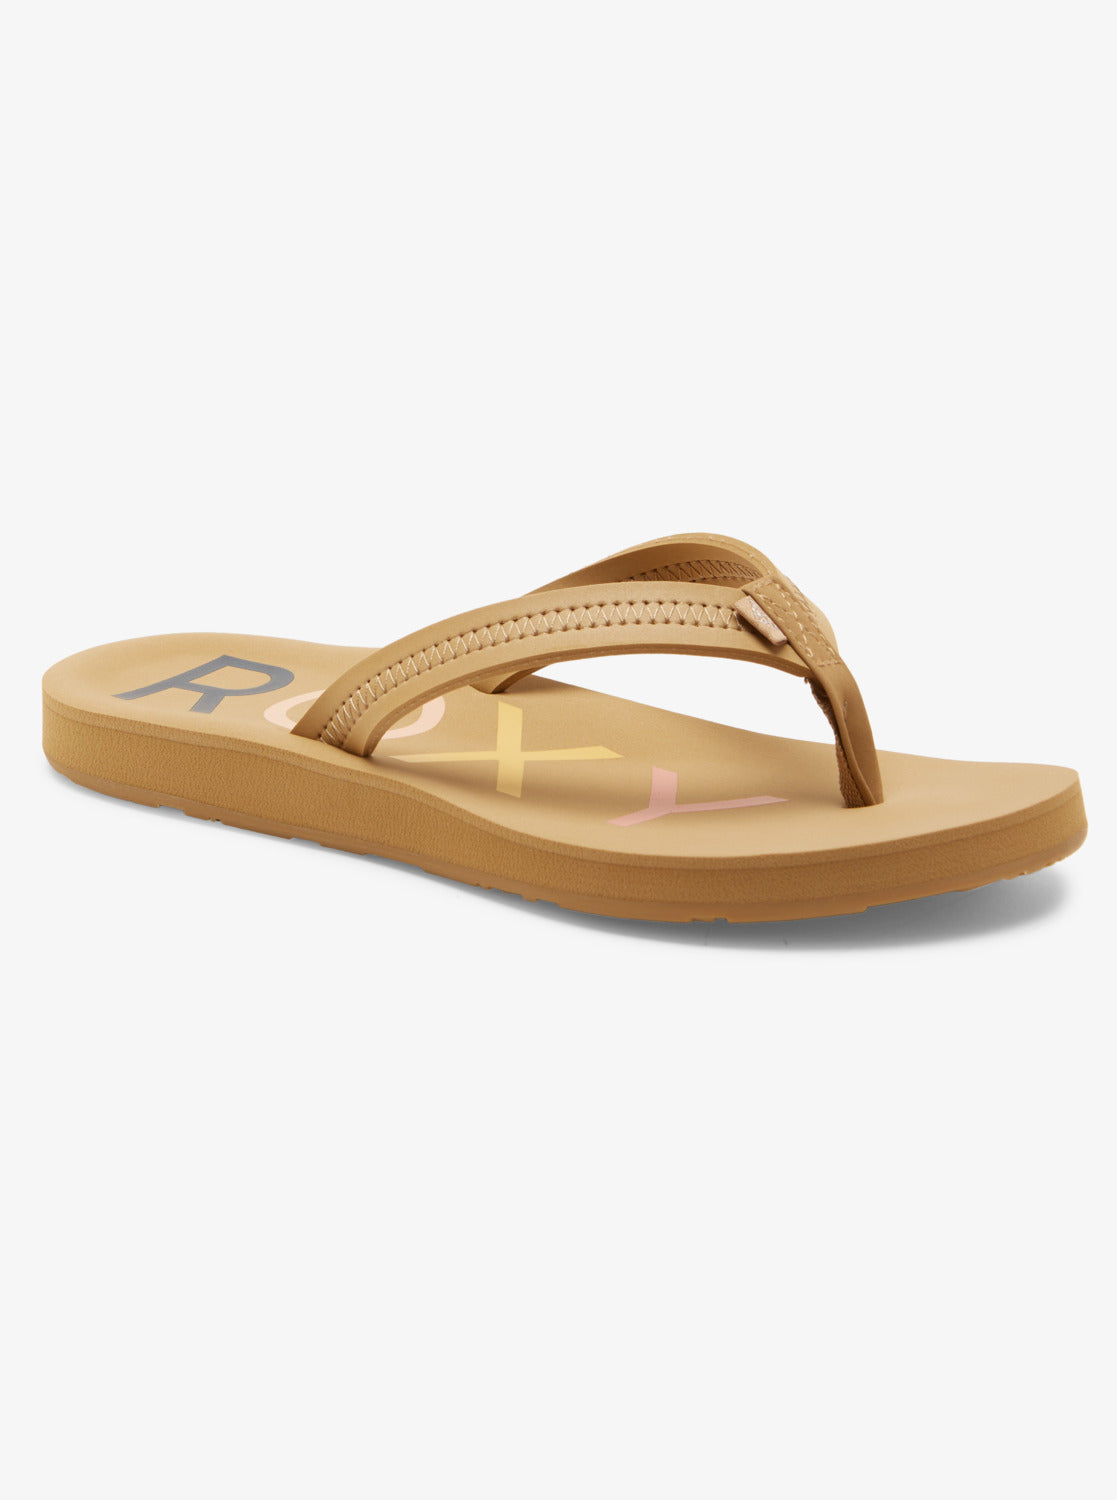 Vista IV Sandals - Tan